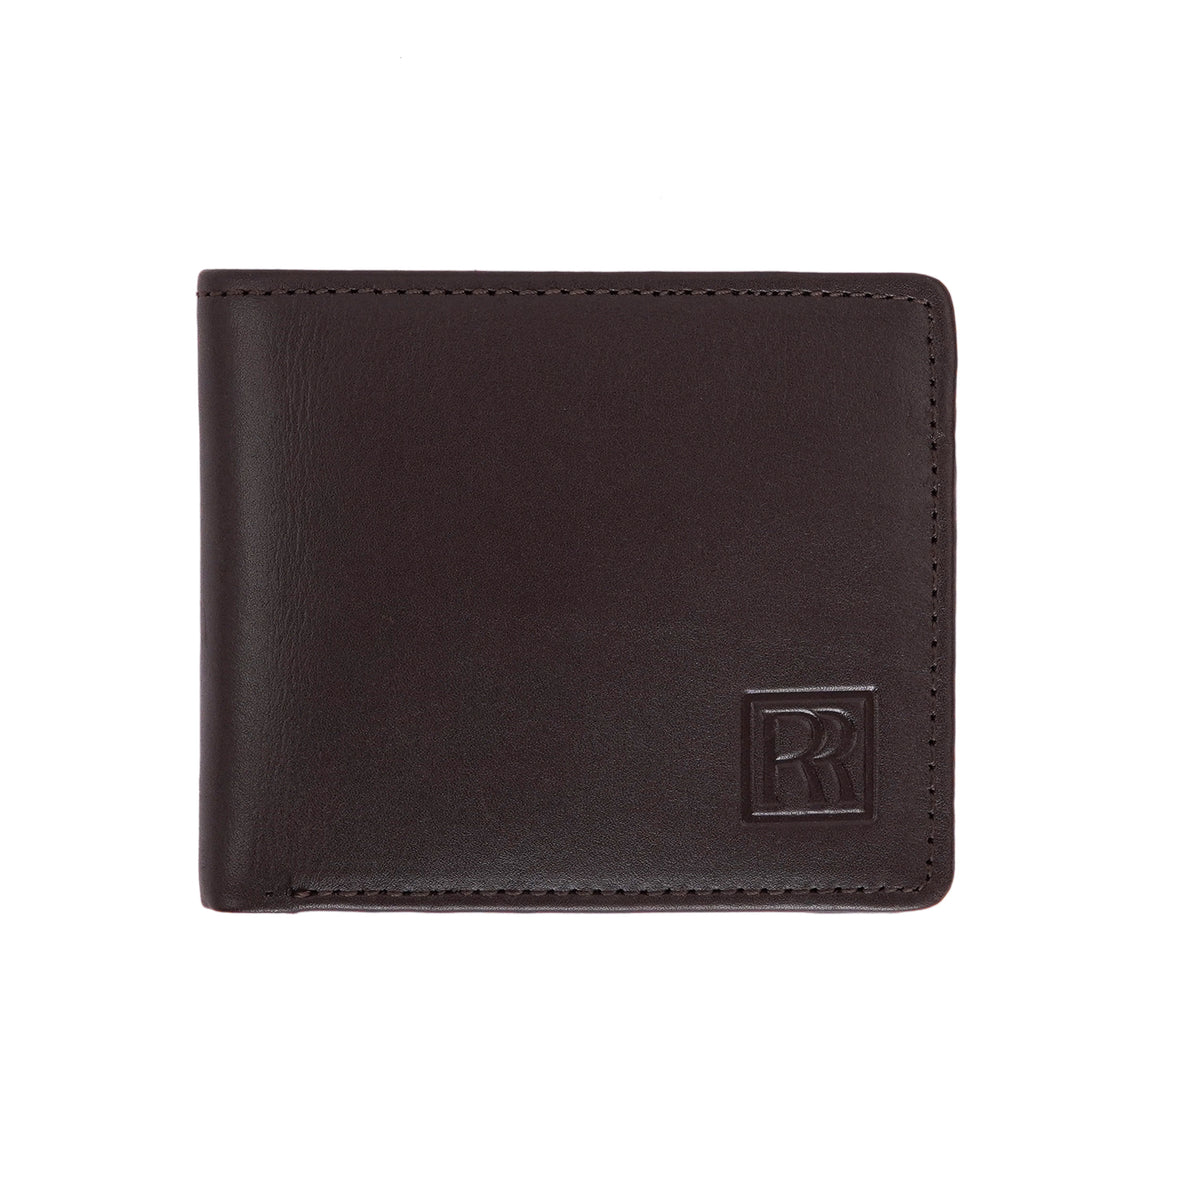 The Minimalist Billfold Wallet – Brown